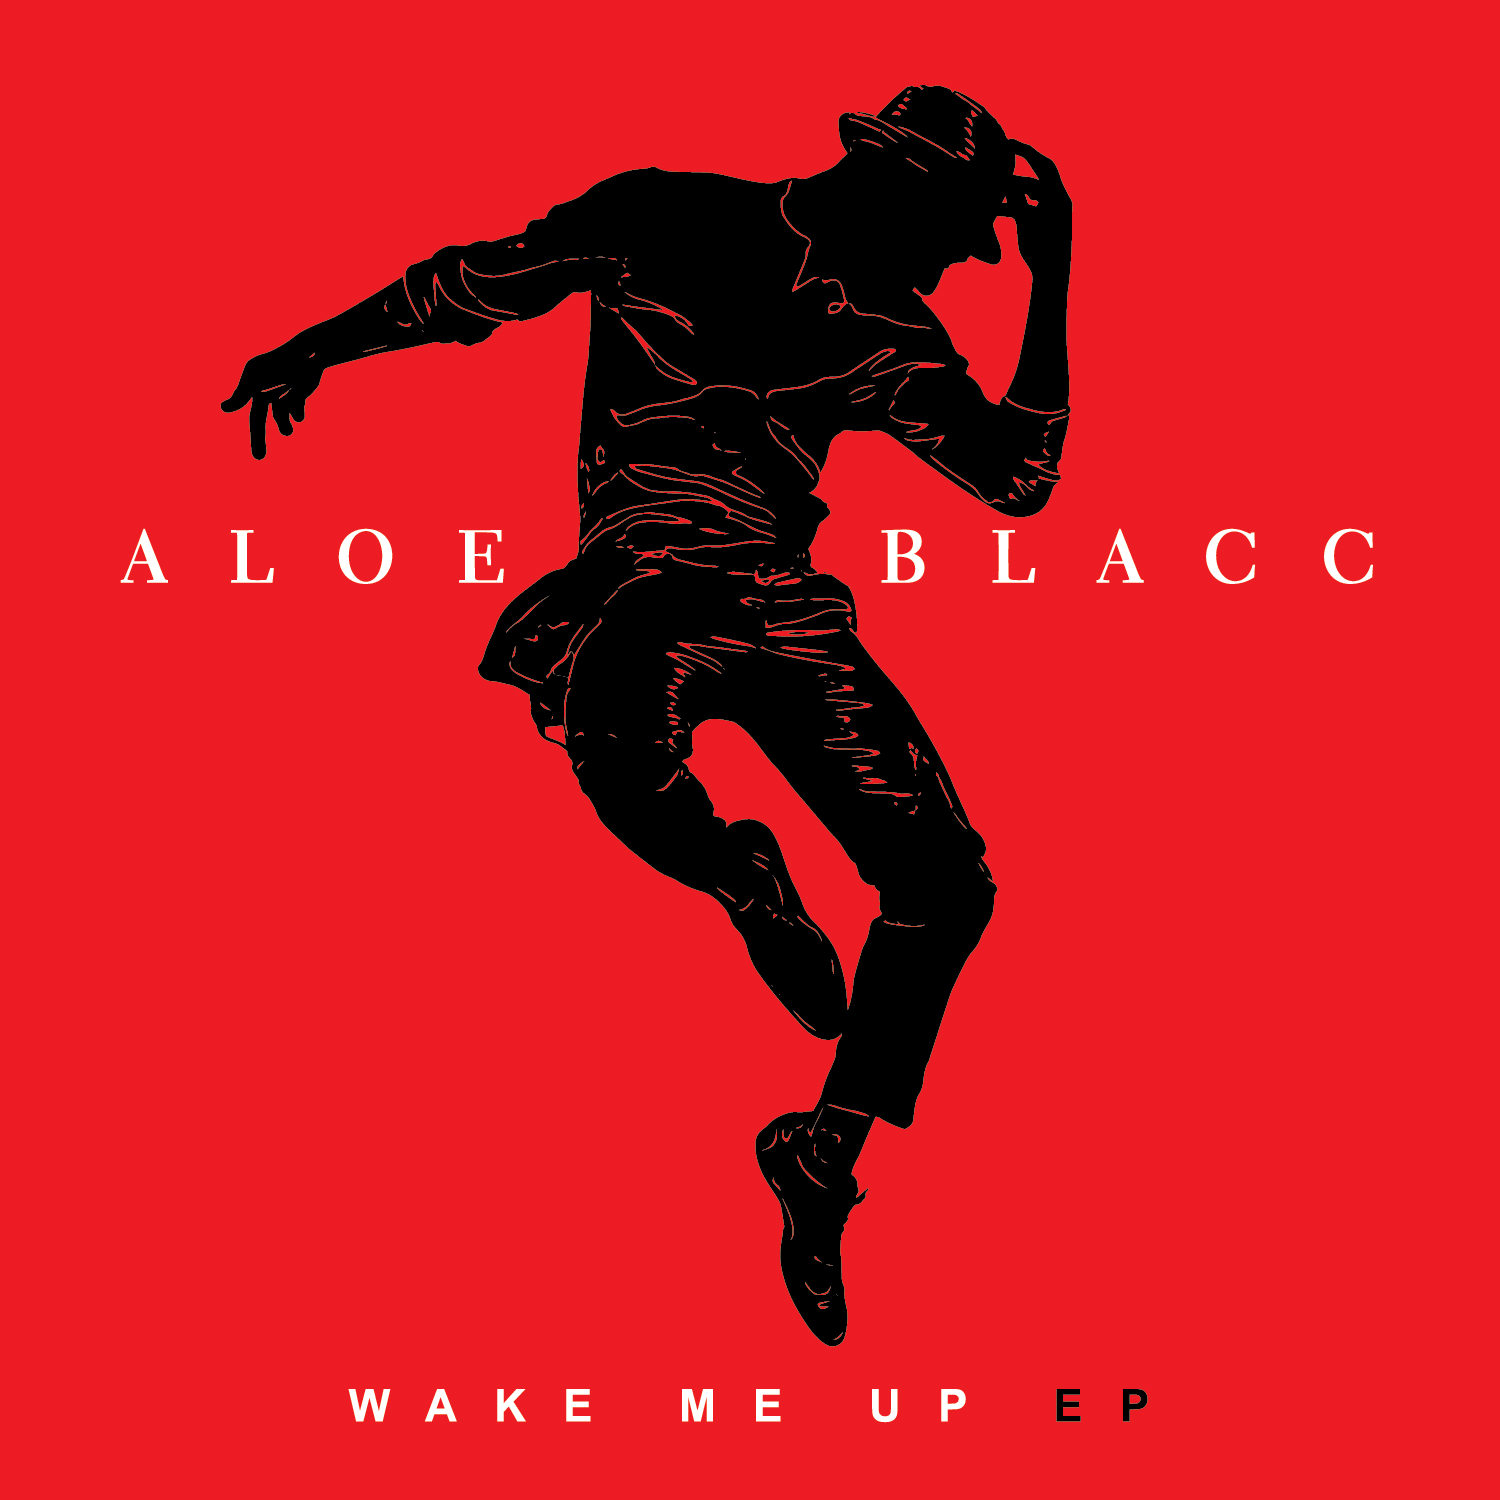 Wake Me Up, nouvel EP d'Aloe Blacc. Déjà disponible en digital, sortie physique le 28 octobre.